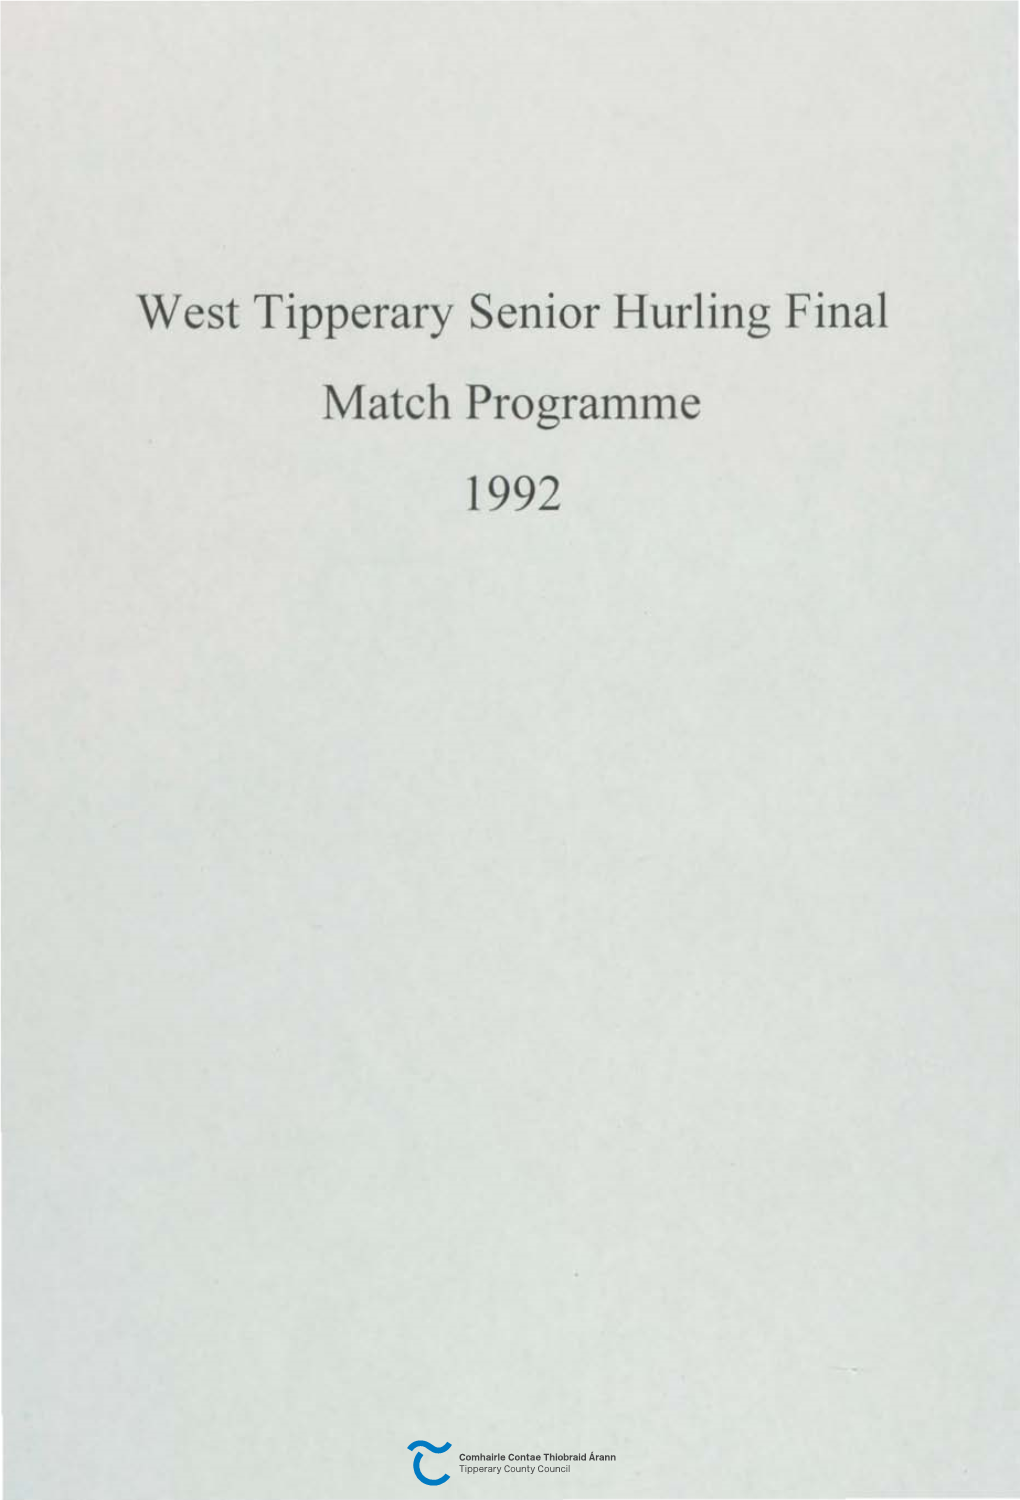 West Tipperary Senior Hurling Final Match Programme 1992